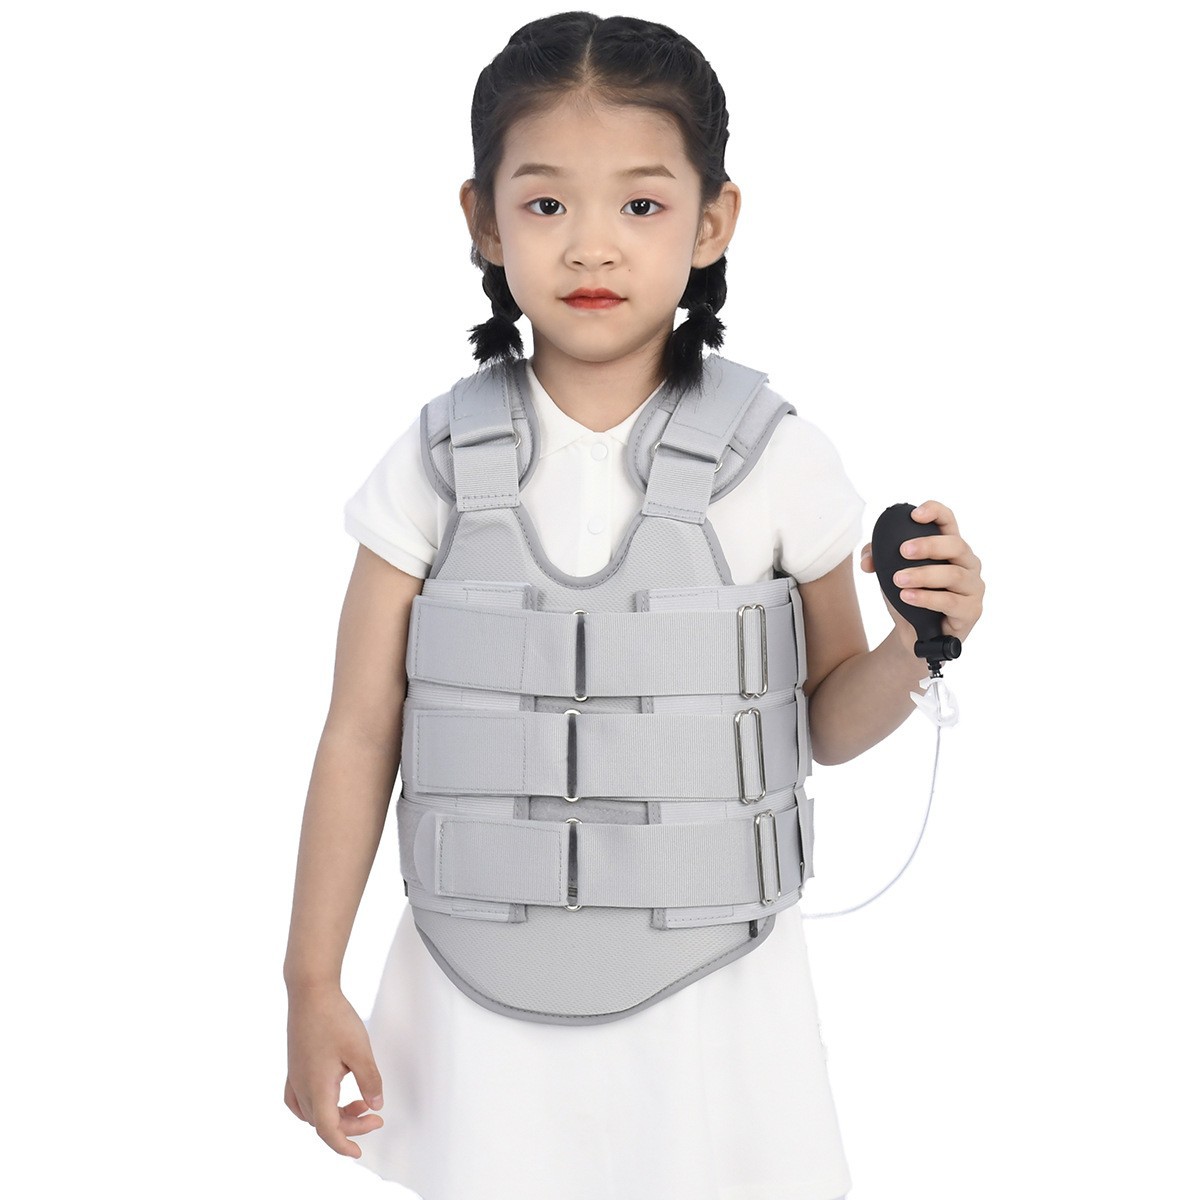 GX Dynasty Medical K-014 Thoracolumbale fixatiebrace voor kinderen met airbag